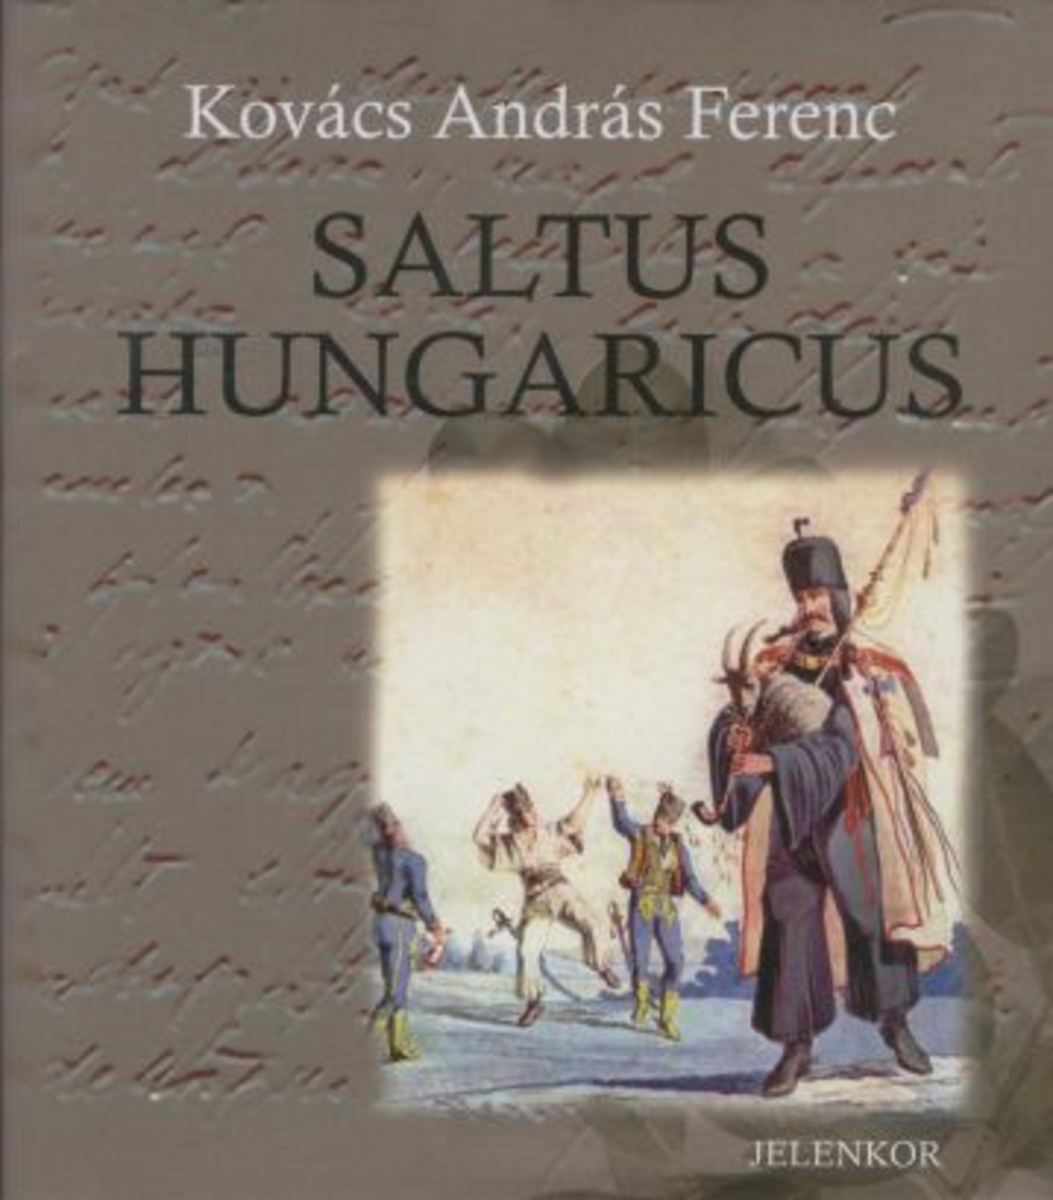 Kovács András Ferenc: Saltus Hungaricus, összmagyar versek szórványban : (1995-1998), Kovács András Ferenc ; ill. Gellér B. István | PIM Gyűjtemények